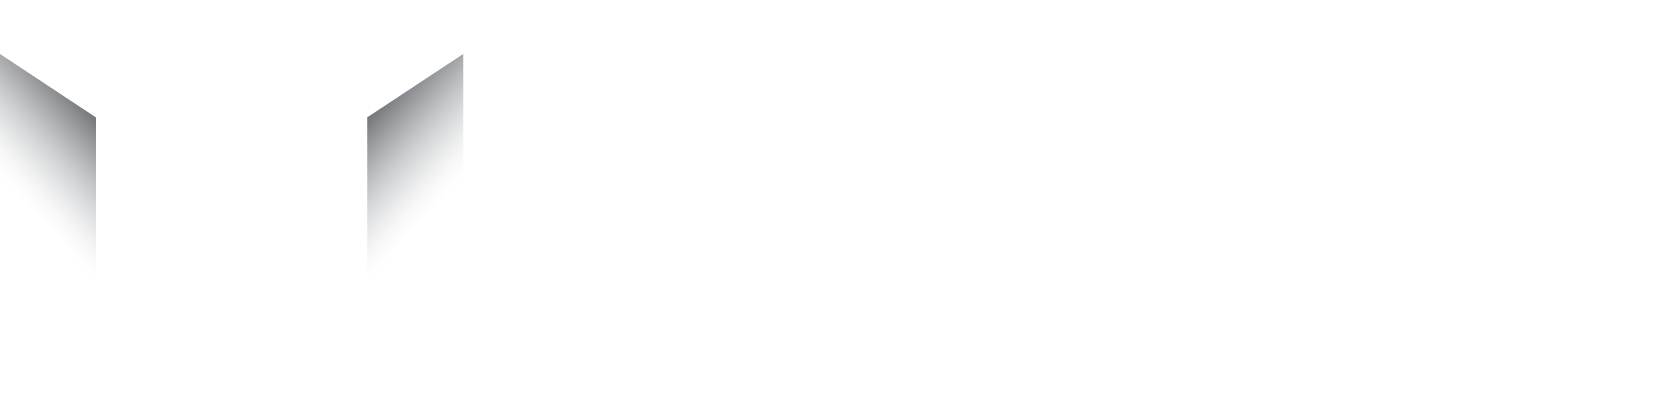 Milieu Service Nederland logo